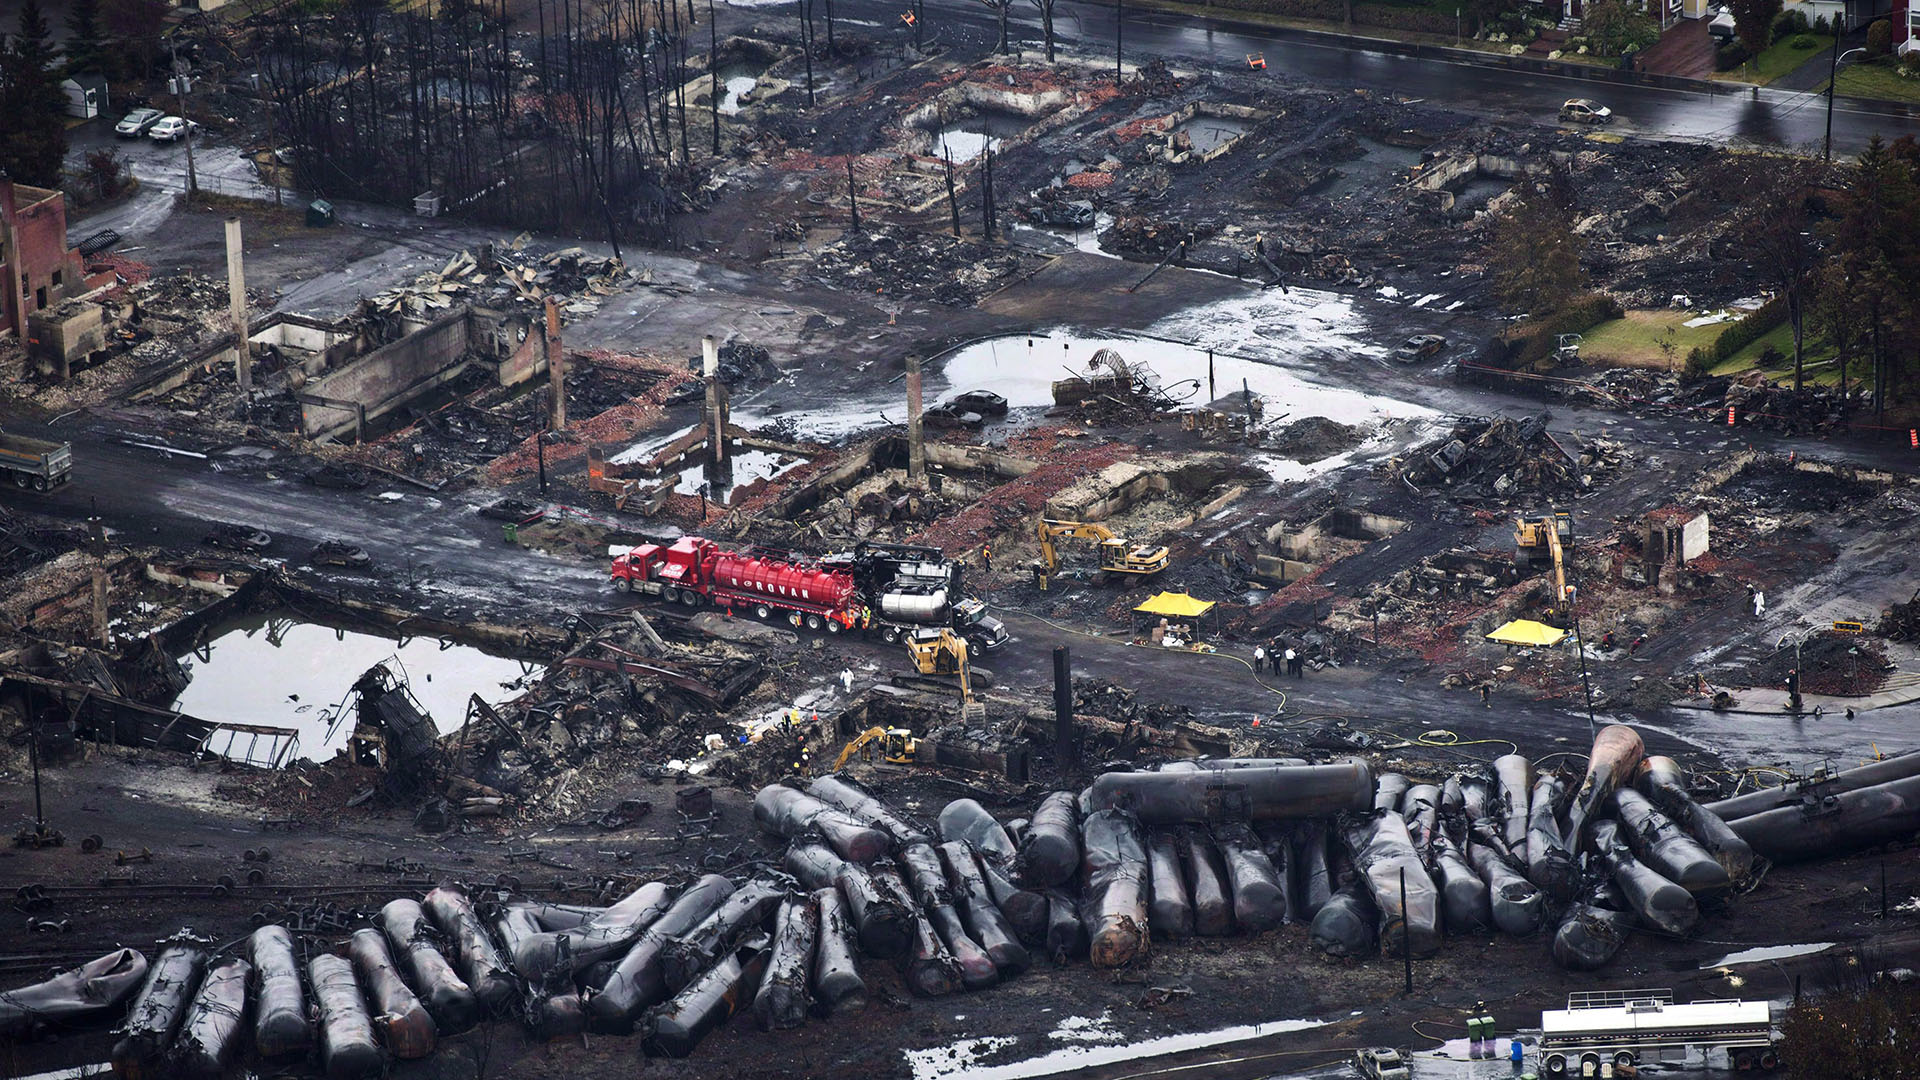 Un train a déraillé le samedi 9 juillet 2013 causant des explosions de wagons transportant du pétrole brut à Lac-Mégantic, au Québec. 